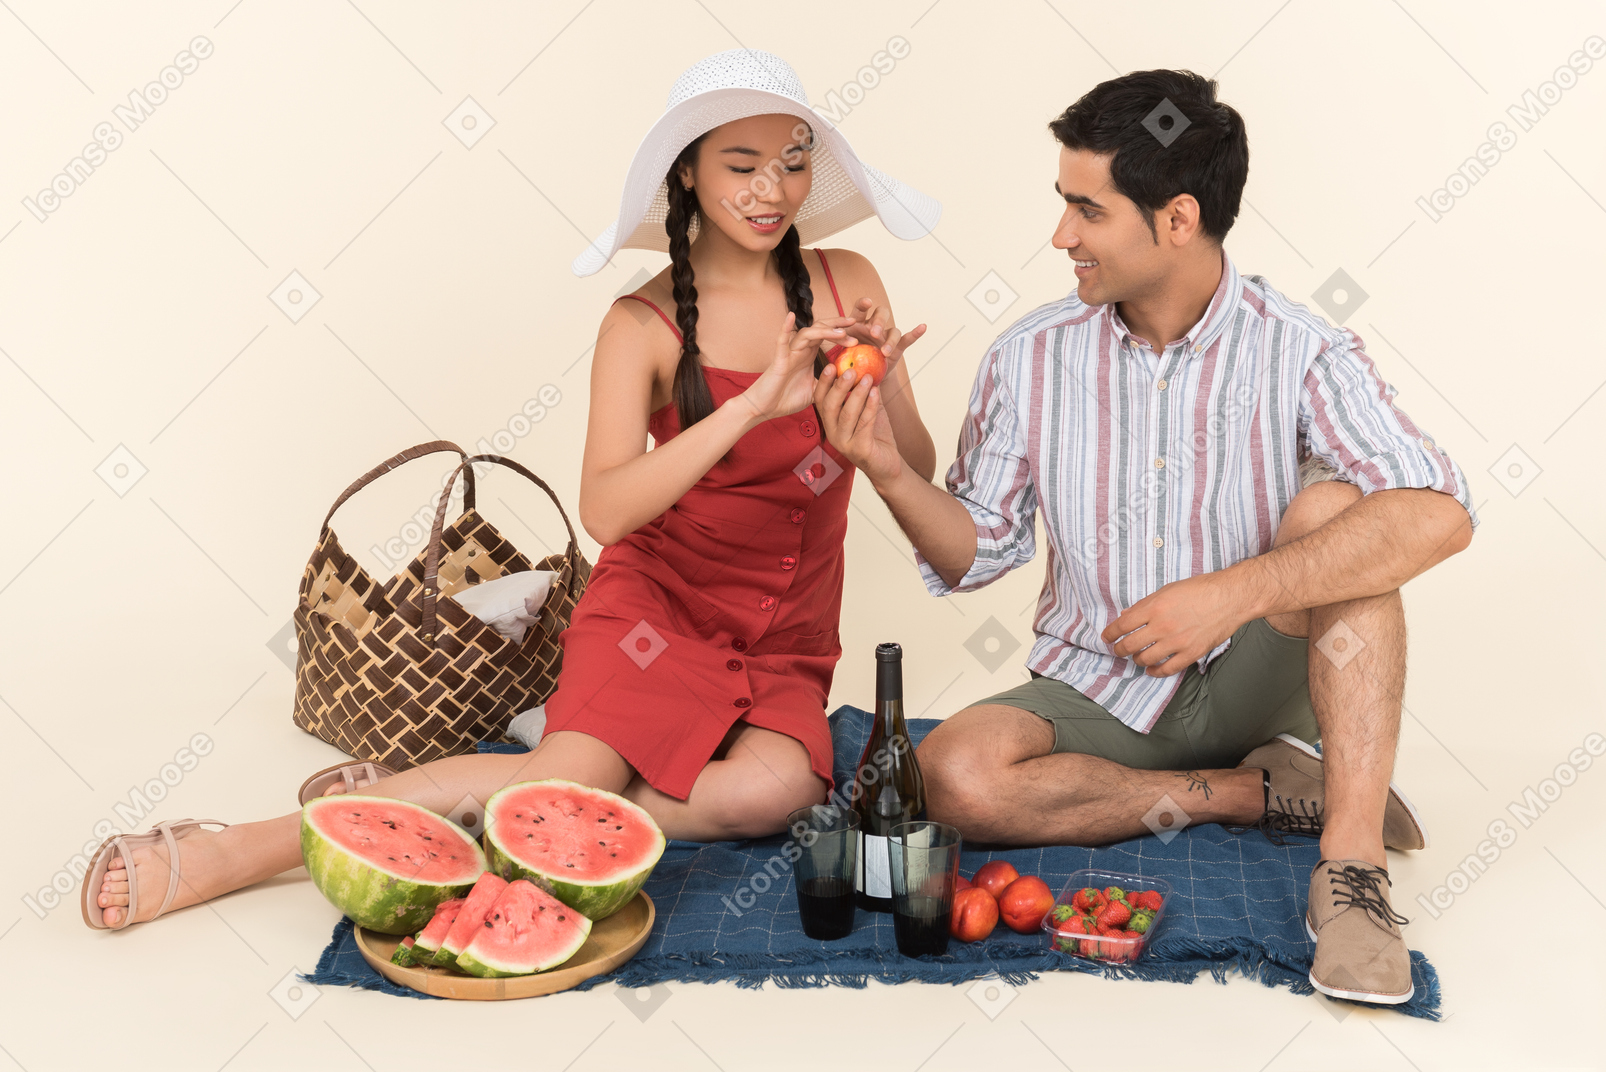 当他们有野餐时，年轻人给一个女孩的水果